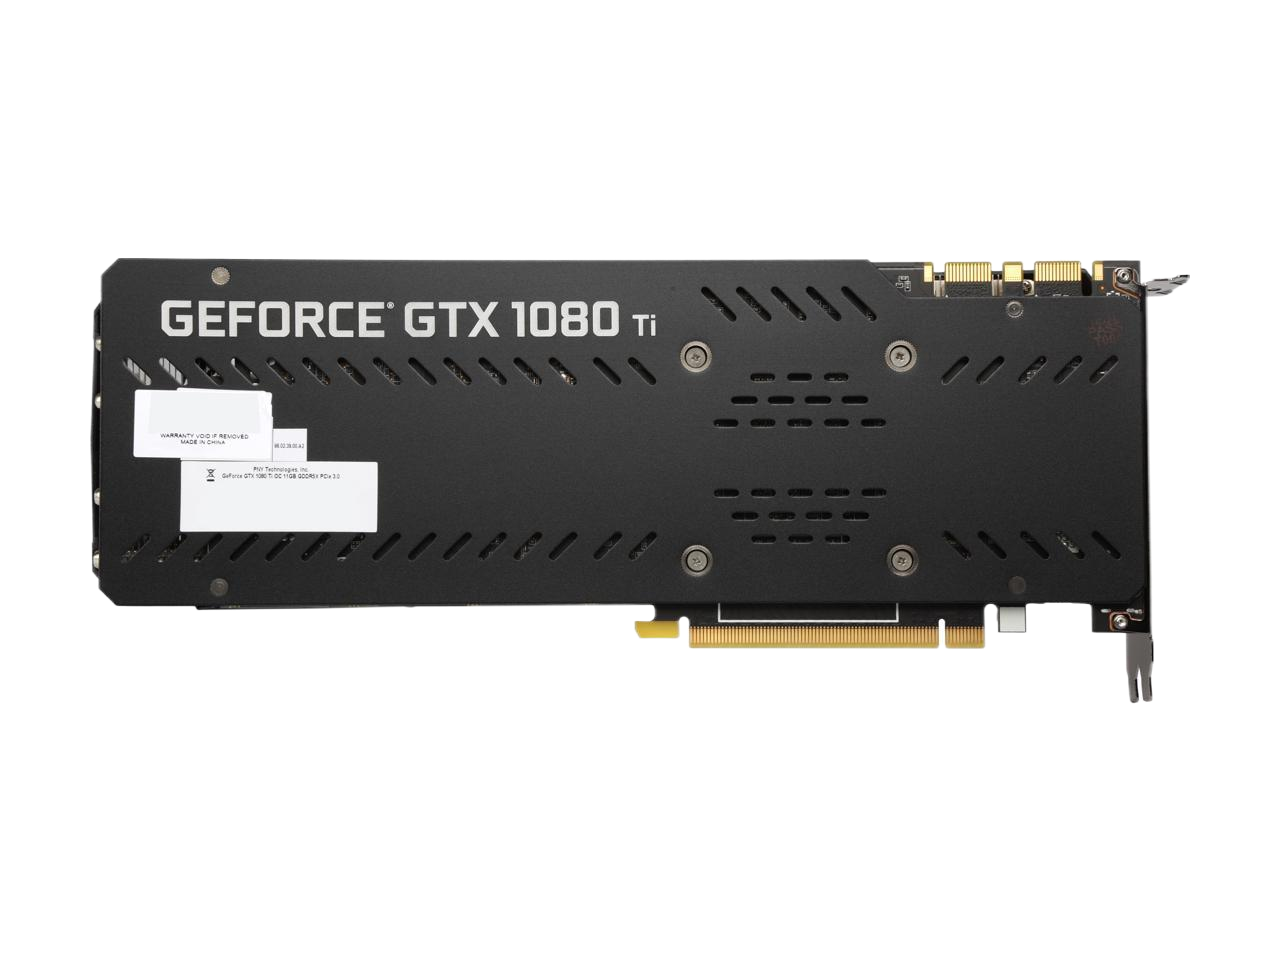 PNY GeForce GTX 1080 Ti XLR8 Gaming OC 11GB GDDR5X PCI Express 3.0 x16 SLI Video Graphics Card VCGGTX1080T11XGPB-OC